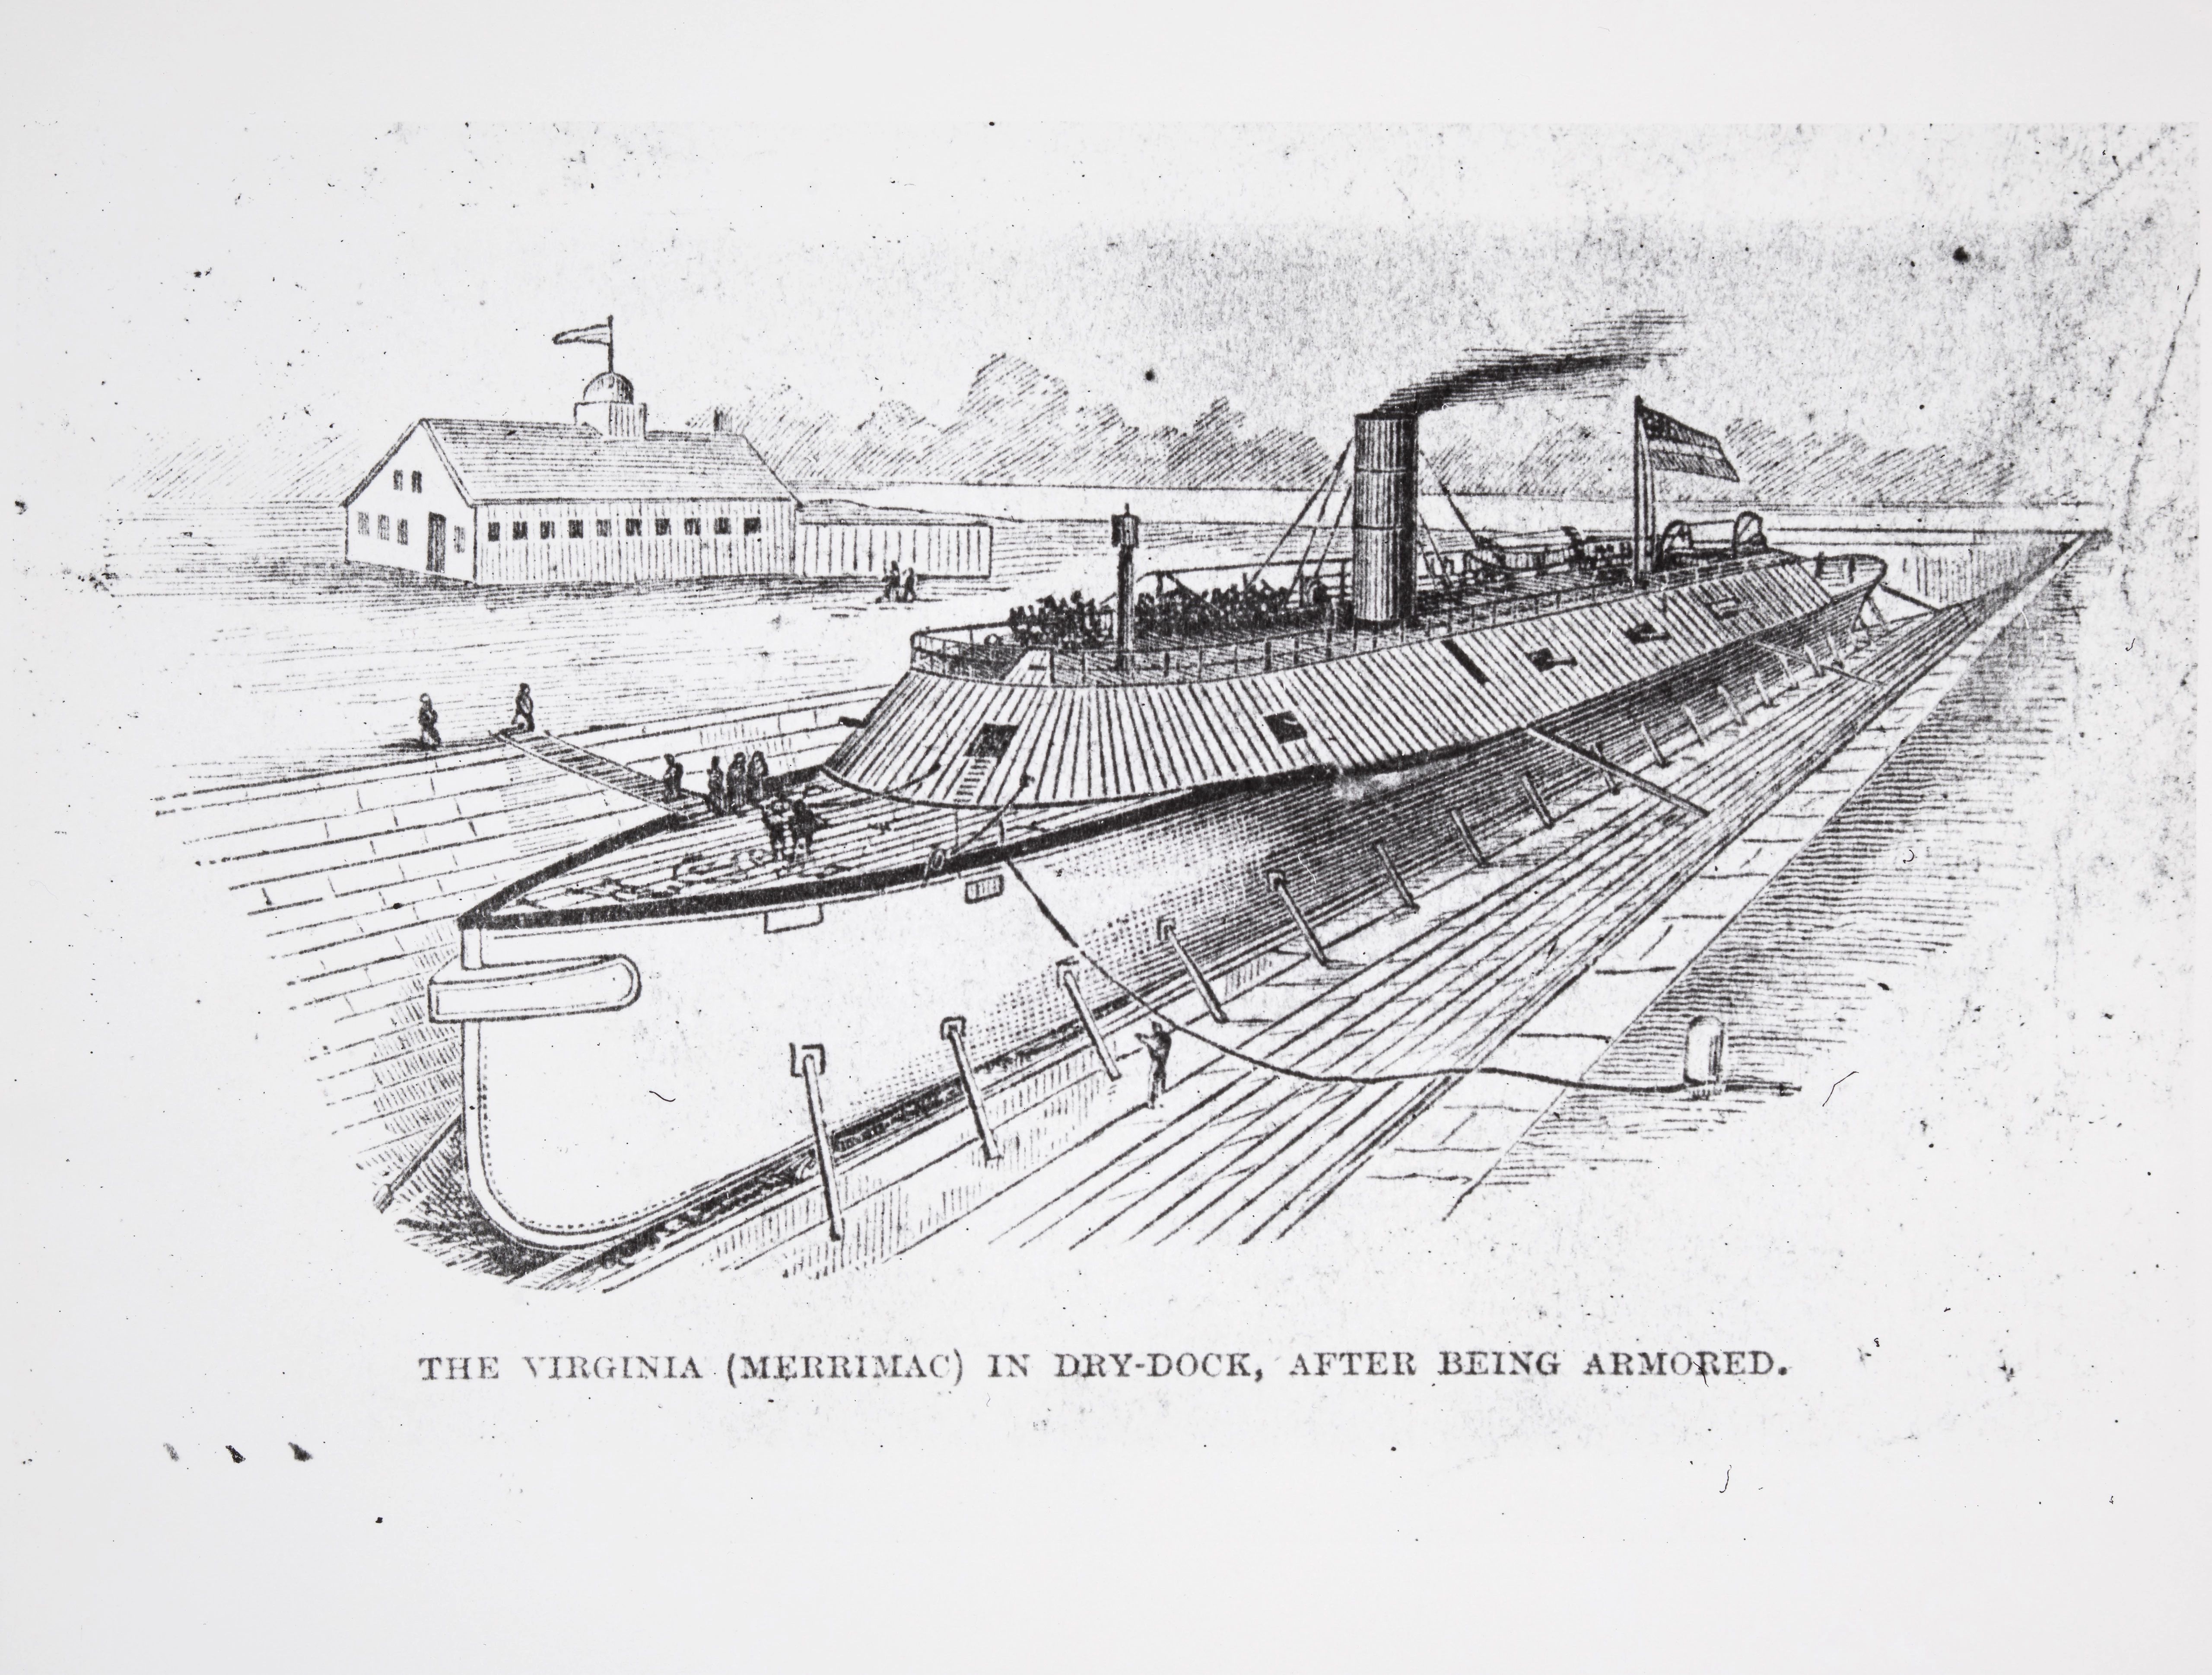 CSS Virginia (Merrimac) in drydock.